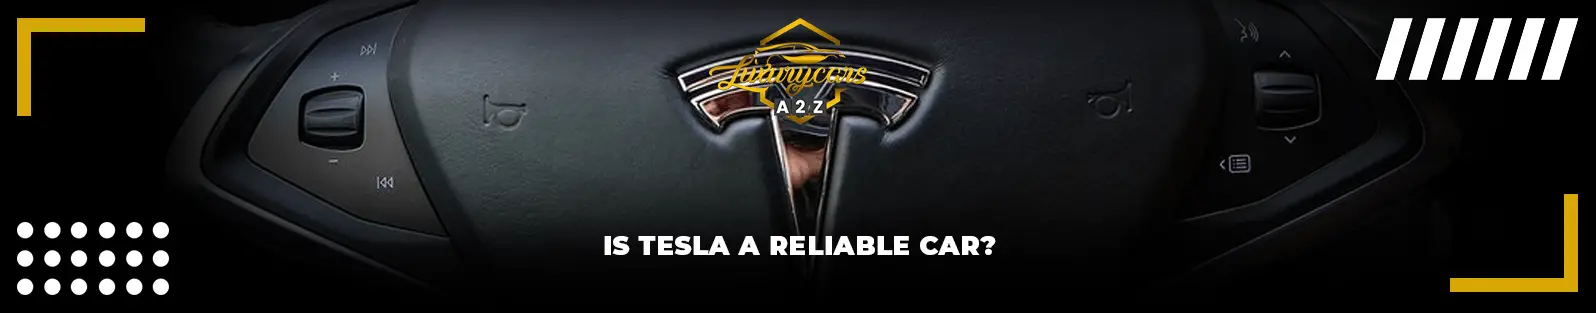 La Tesla est-elle une voiture fiable ?